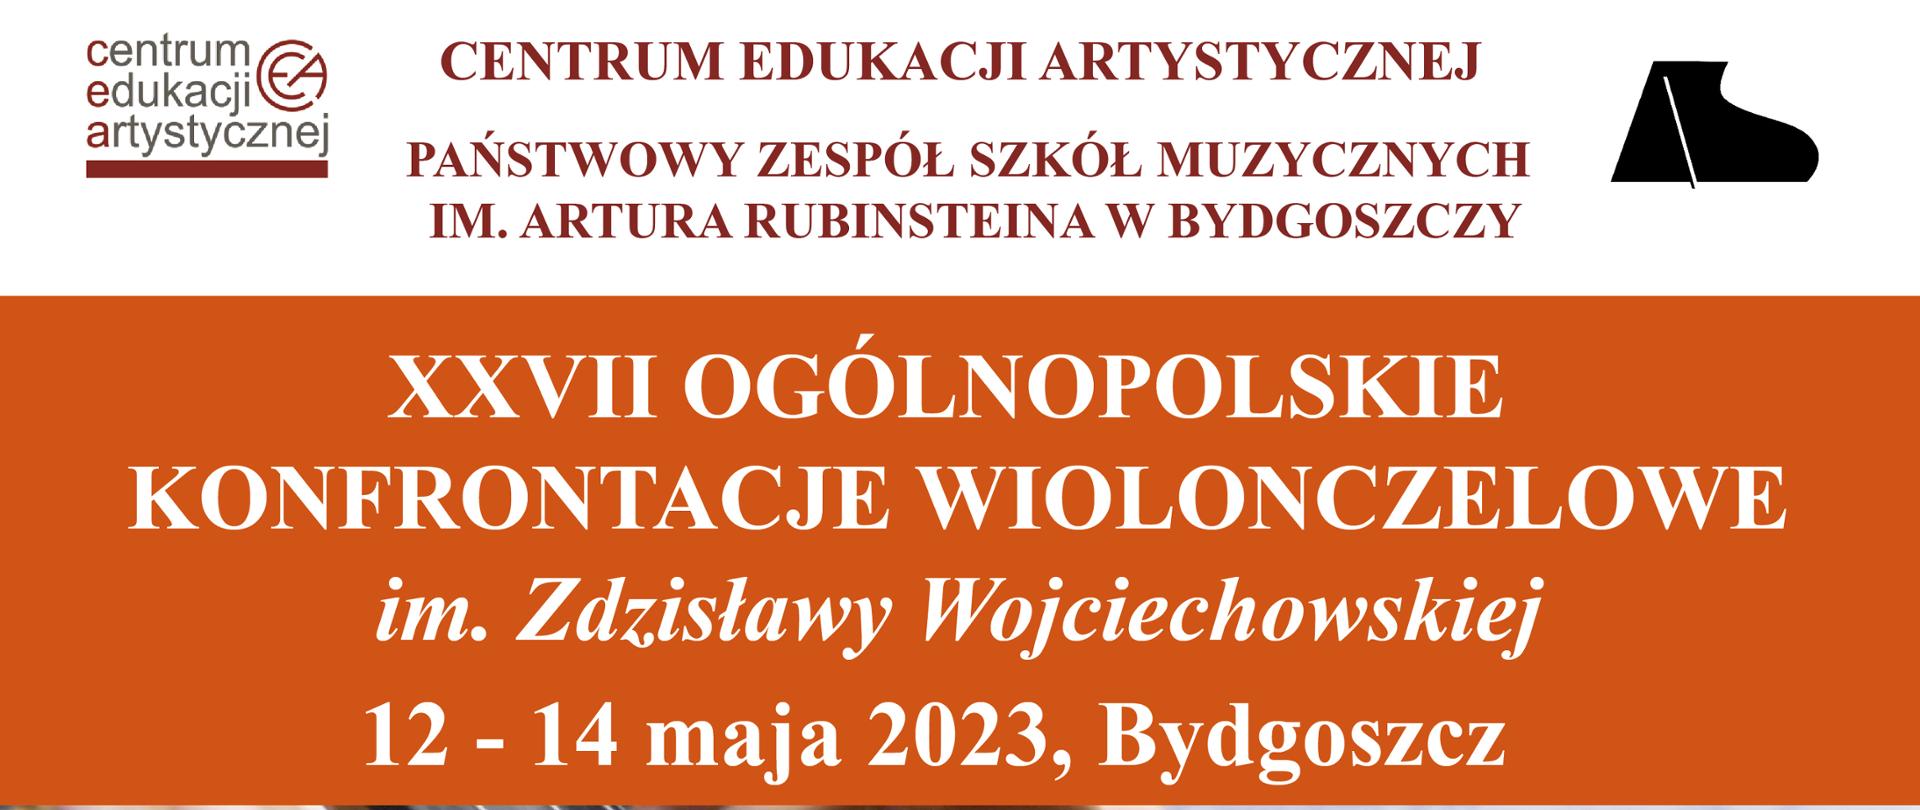 Na plakacie znajduje się wycinek wiolonczeli, nad nim napis dwudzieste siódme konfrontacje wiolonczelowe w dniach 12-14 maja 2023